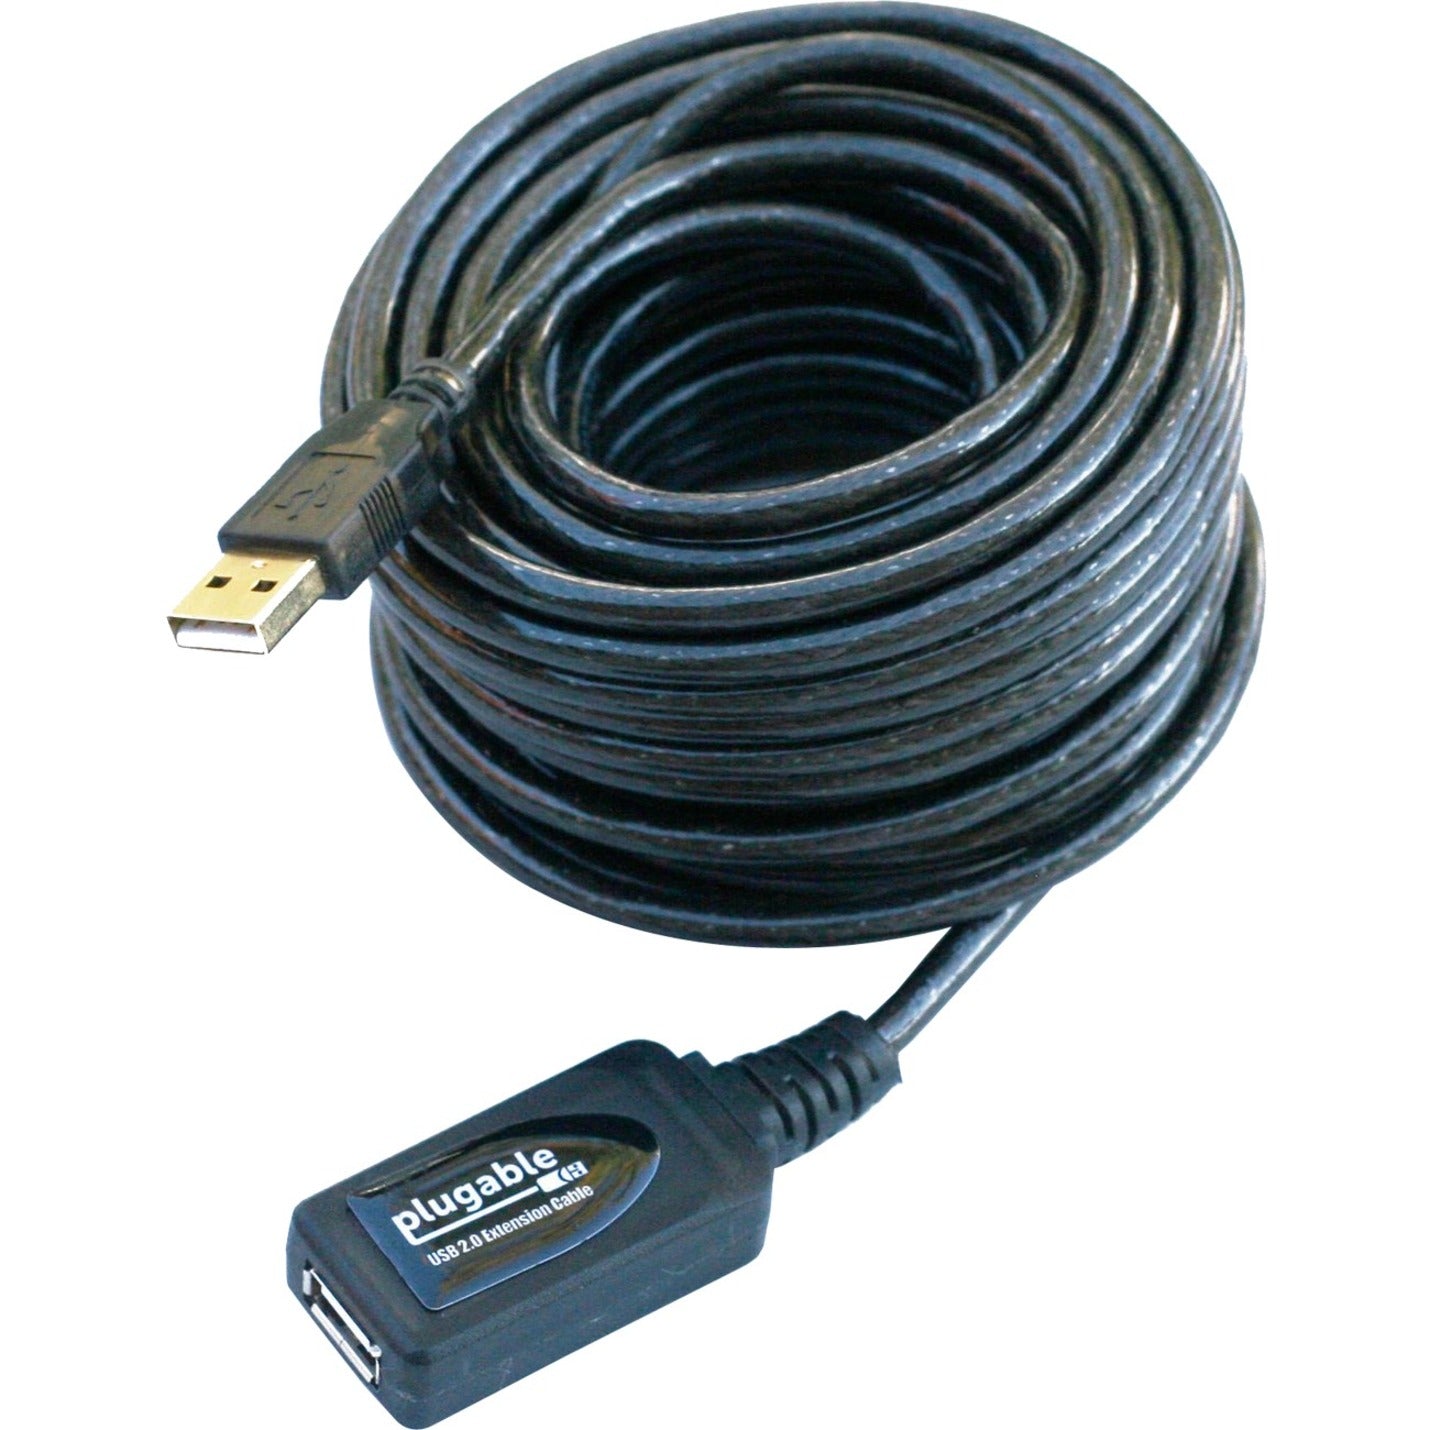 كابل تمديد USB2-10M USB 2.0 النشط (10 متر / 32 قدم) ، مُكرر ، معدل نقل البيانات 480 ميجا بت في الثانية  العلامة التجارية: Plugable